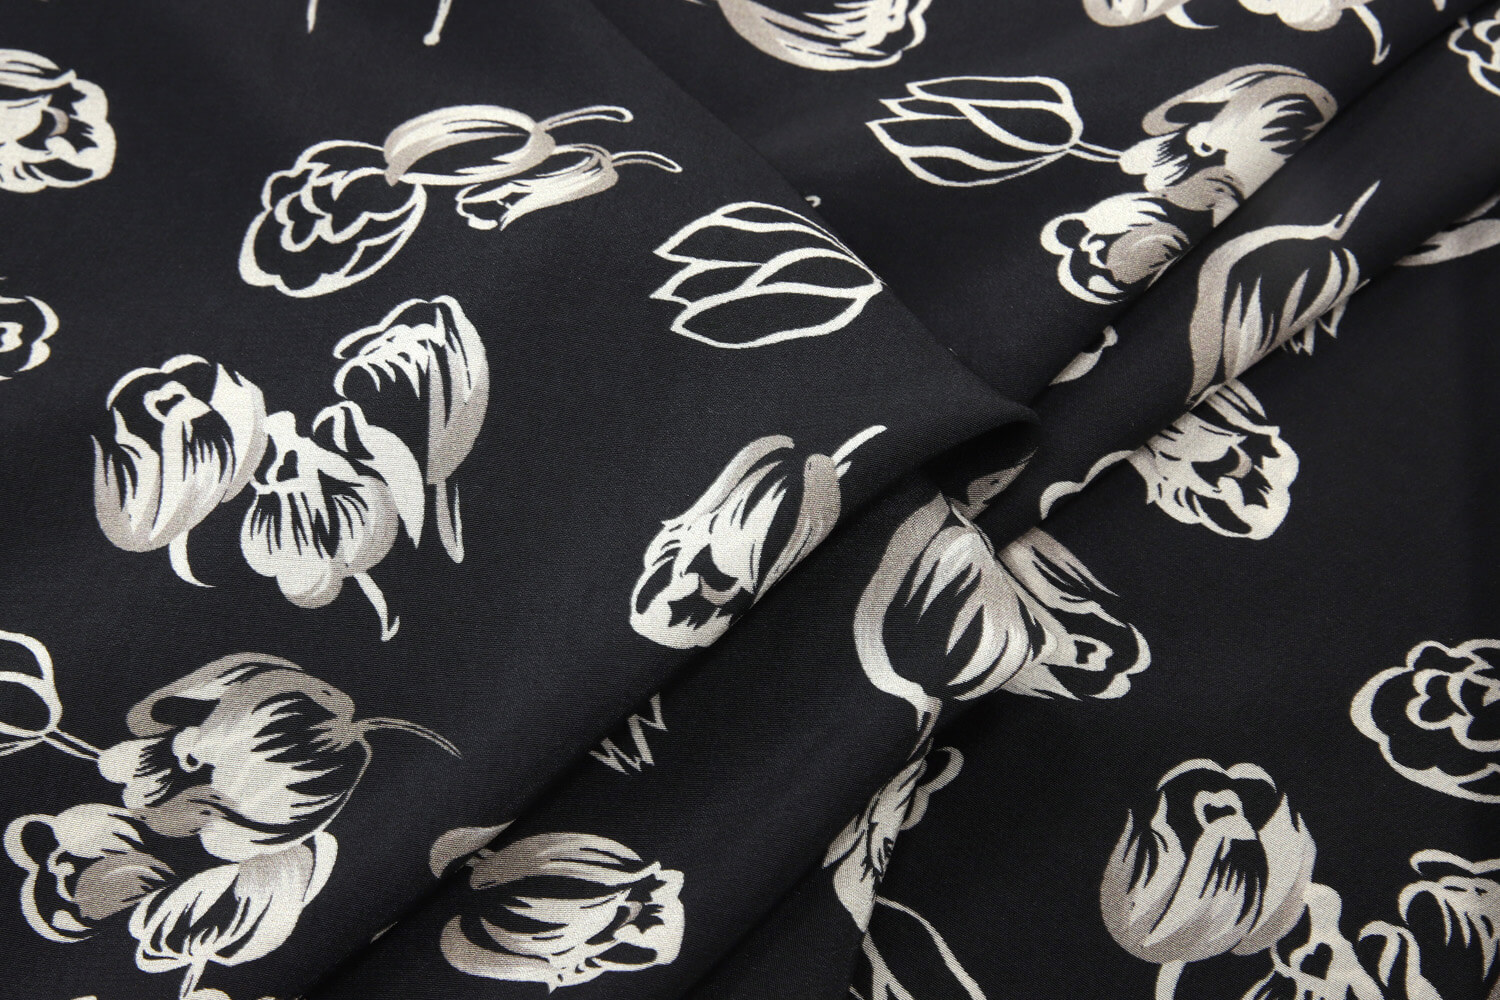 Шелковый крепдешин Louis Vuitton, цвет Черно-белый, фото 1